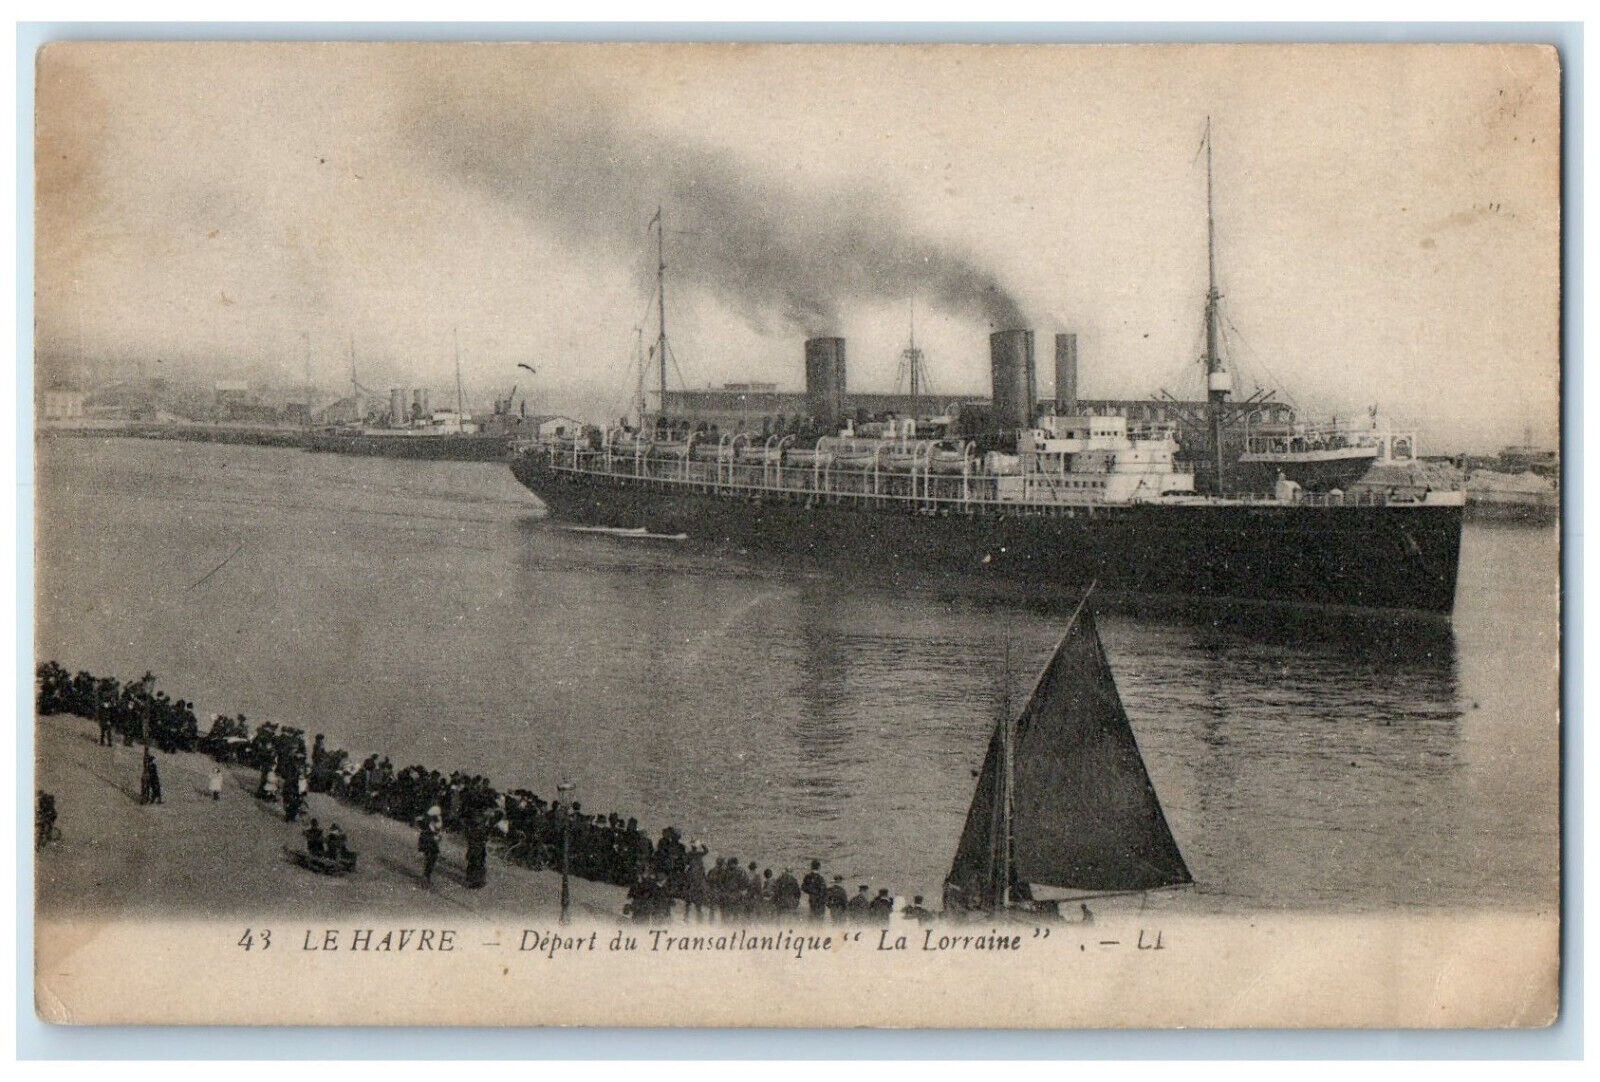 c1910 Departure of the transatlantic La Lorraine Le Havre France Postcard